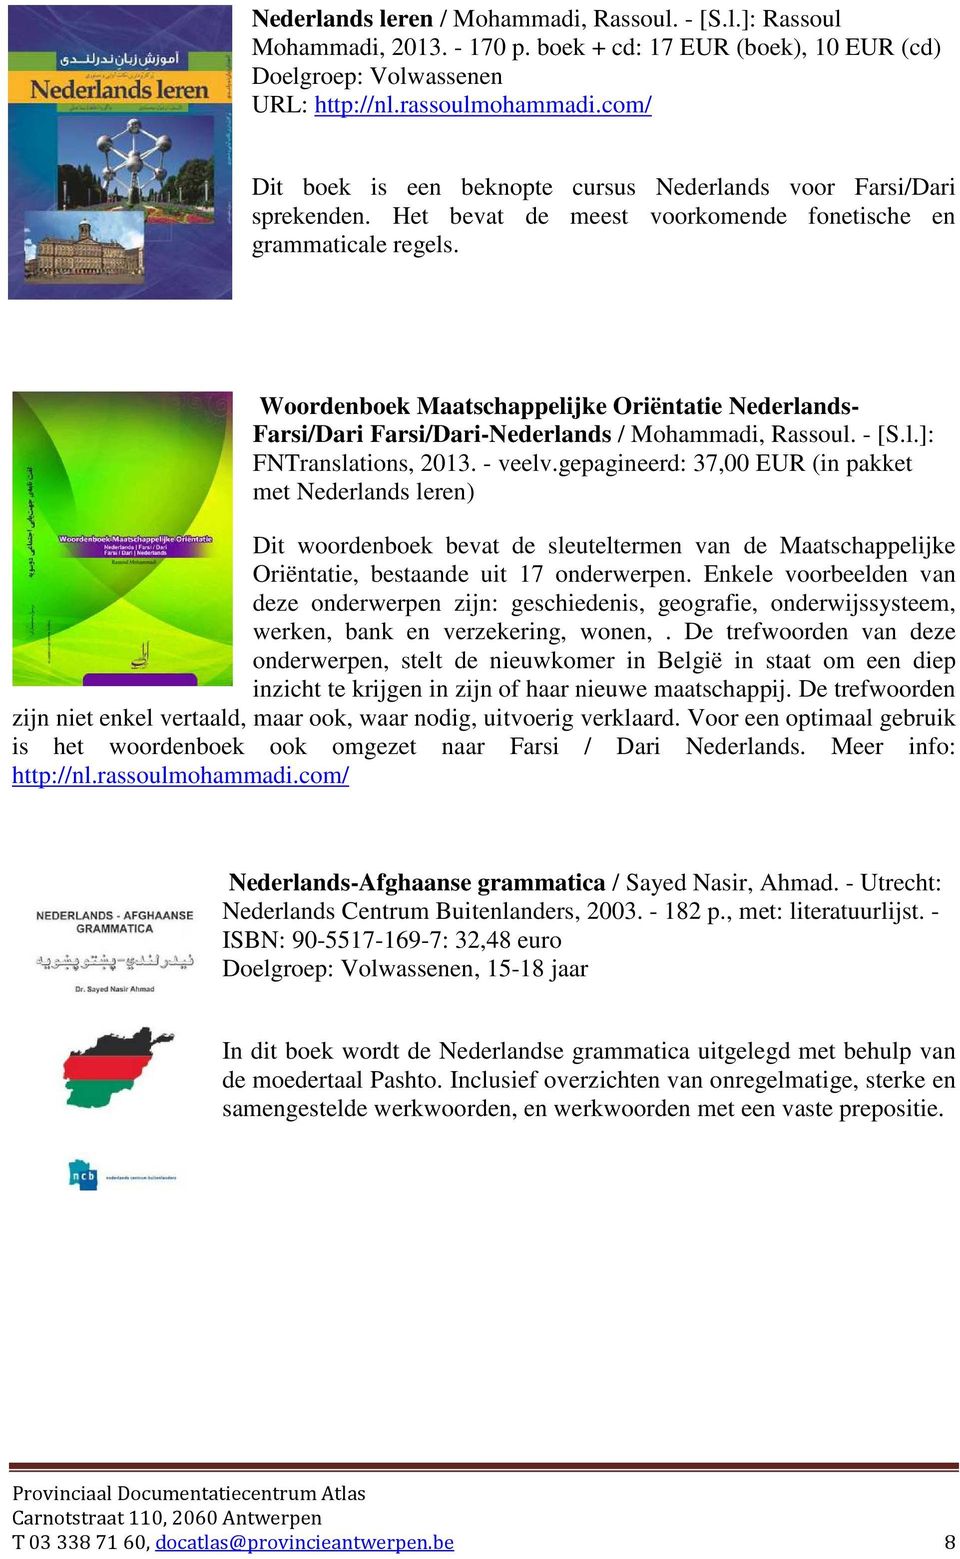 Woordenboek Maatschappelijke Oriëntatie Nederlands- Farsi/Dari Farsi/Dari-Nederlands / Mohammadi, Rassoul. - [S.l.]: FNTranslations, 2013. - veelv.